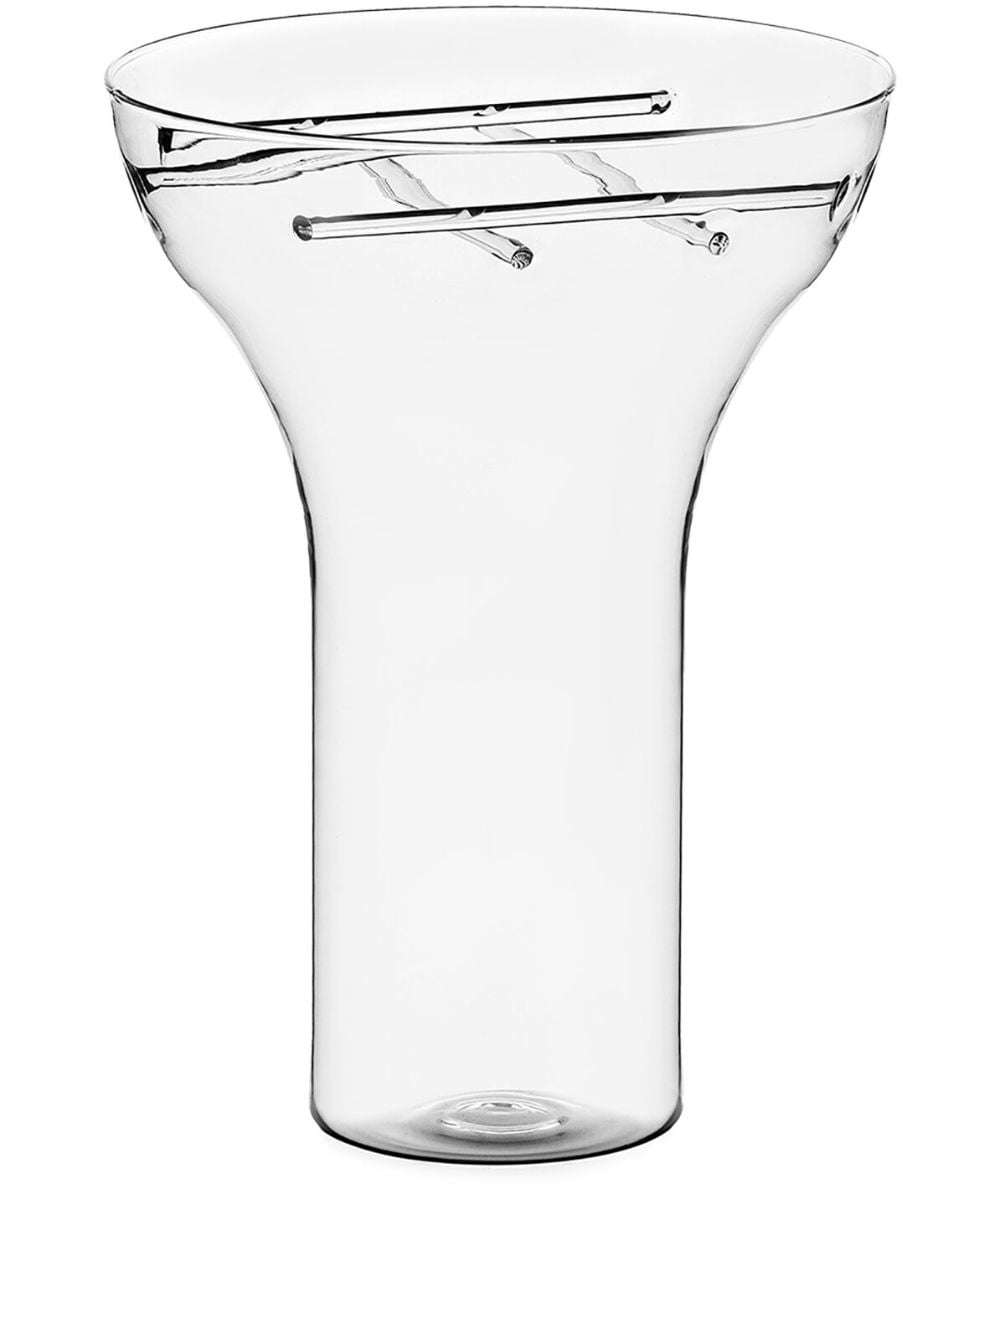 Ichendorf Milano large Trame glass vase - Neutrals von Ichendorf Milano